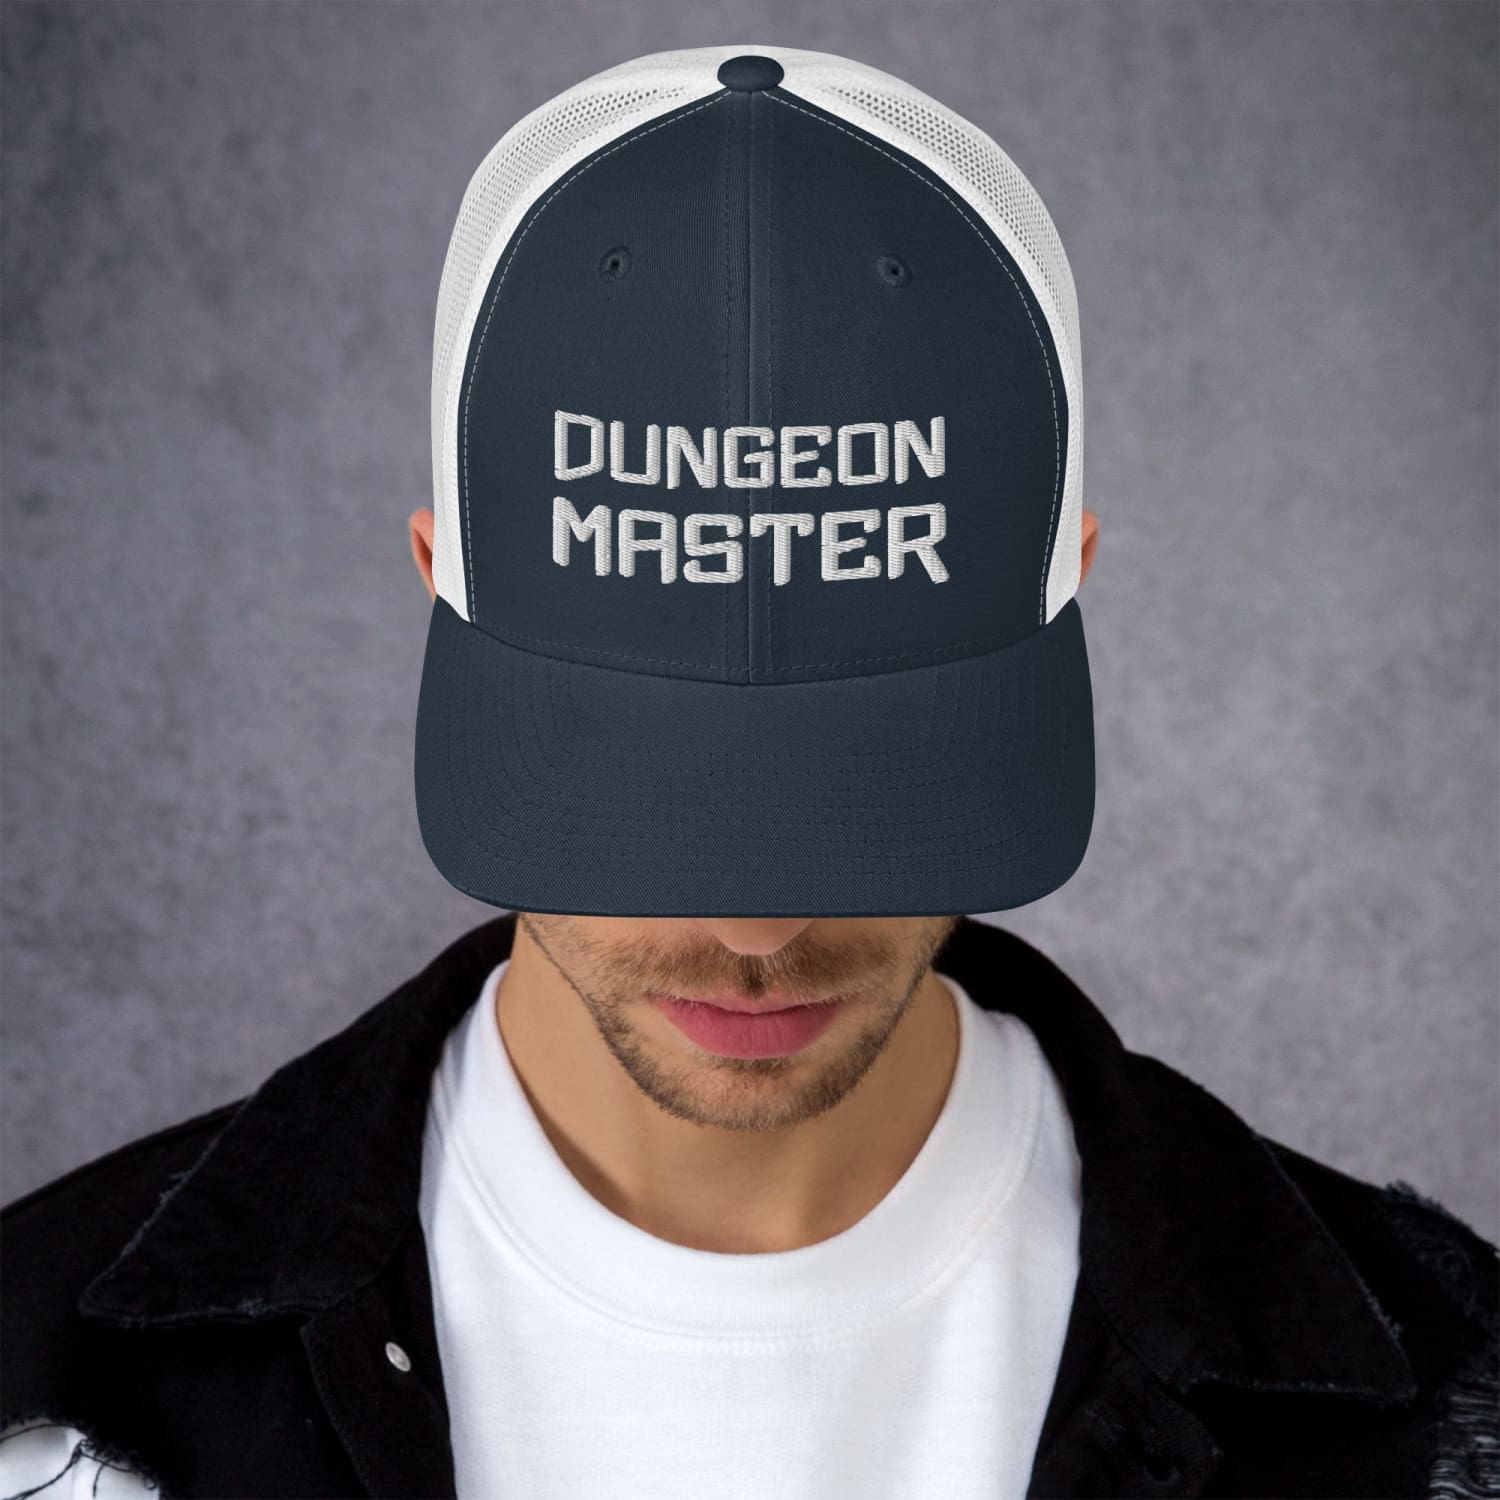 Dungeon Master Xtreme Retro Trucker Cap - Navy/ White